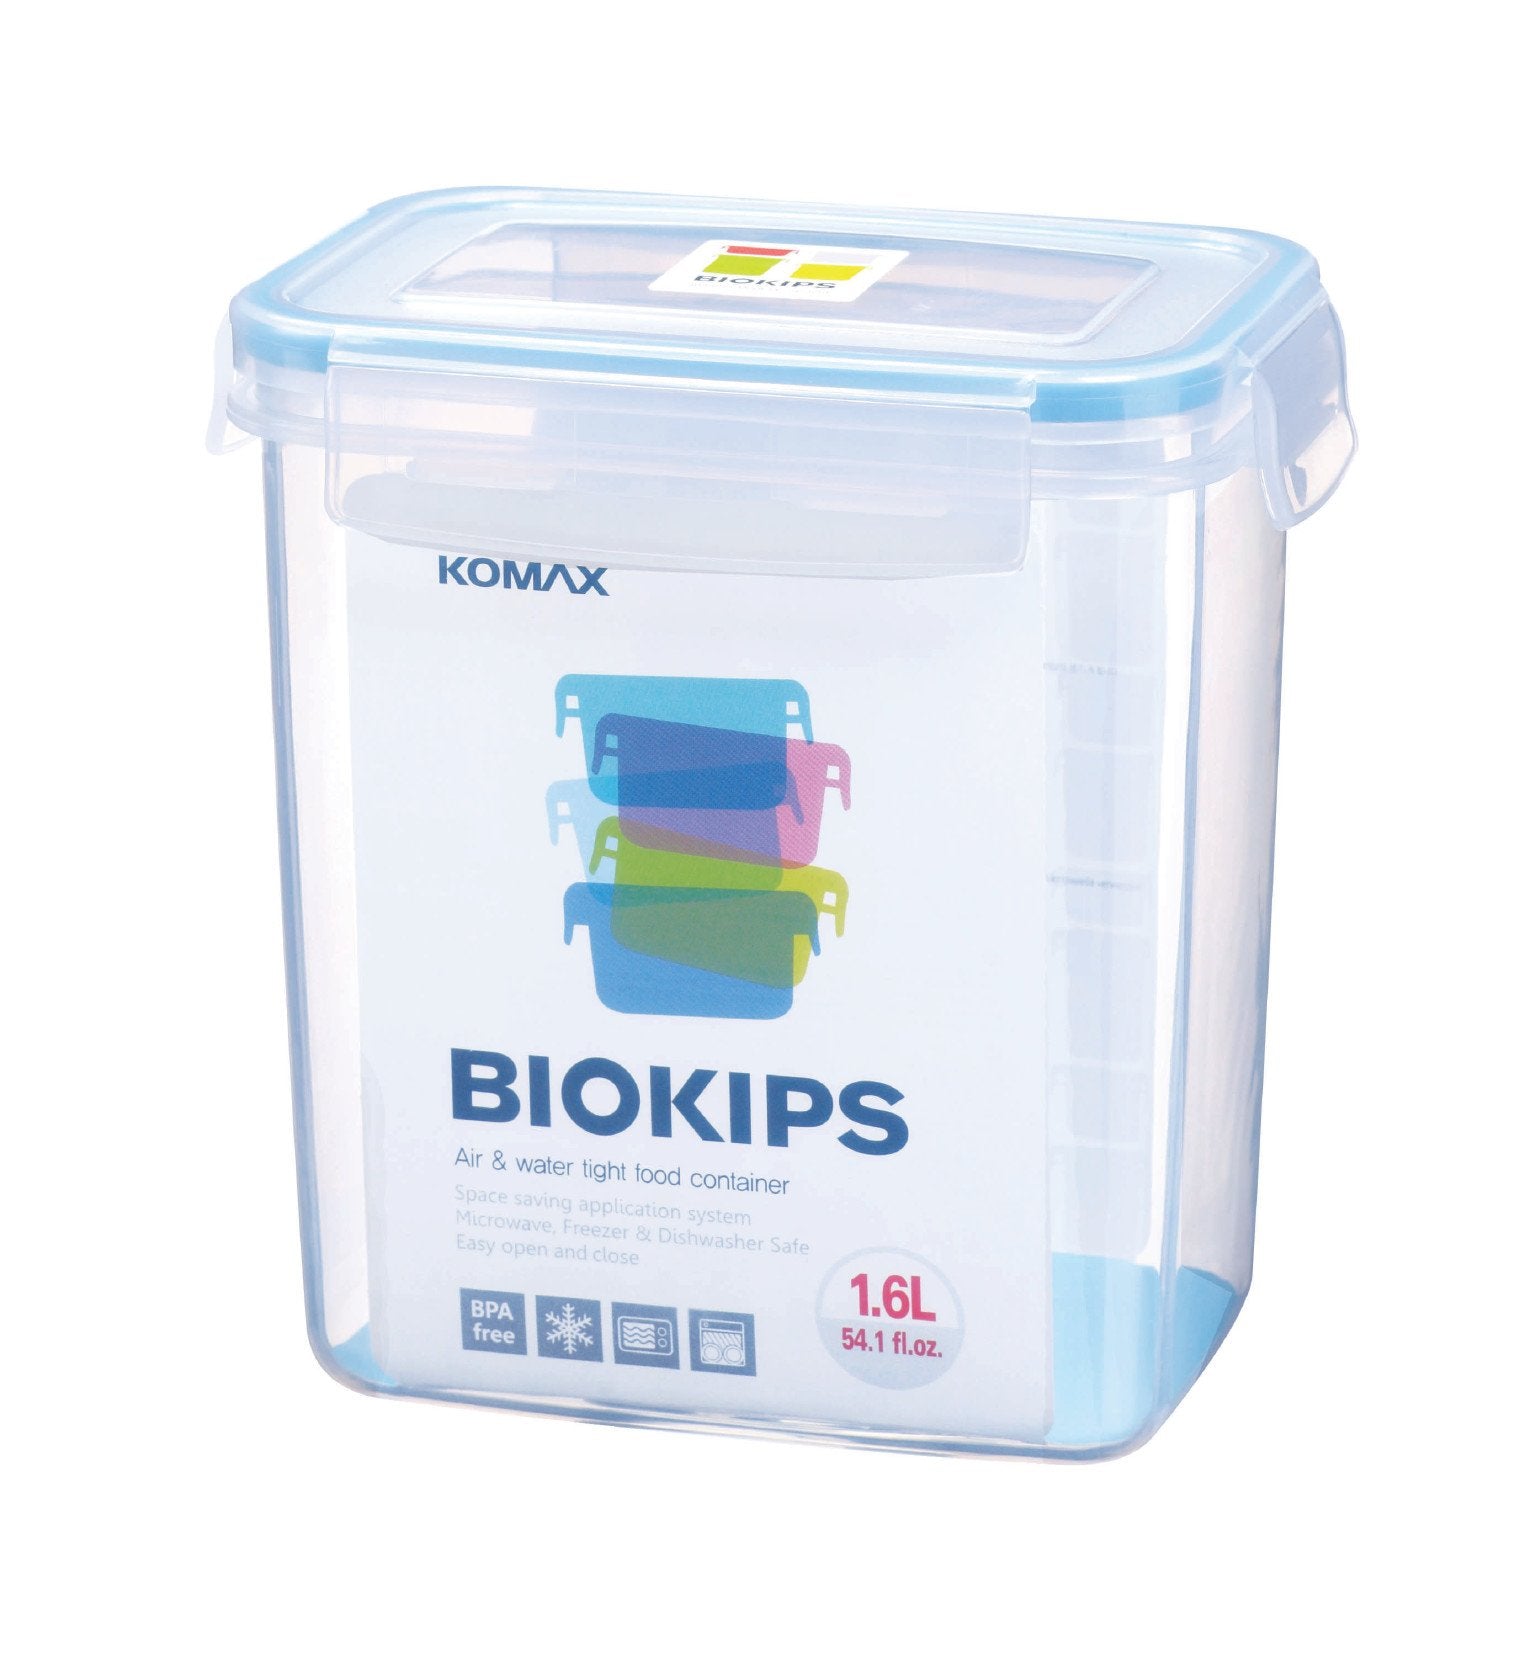 Komax Biokips Rectangular Food Storage Container, 1.6 L
                Komax Biokips Rectangular Food Storage Container, 1.6 L